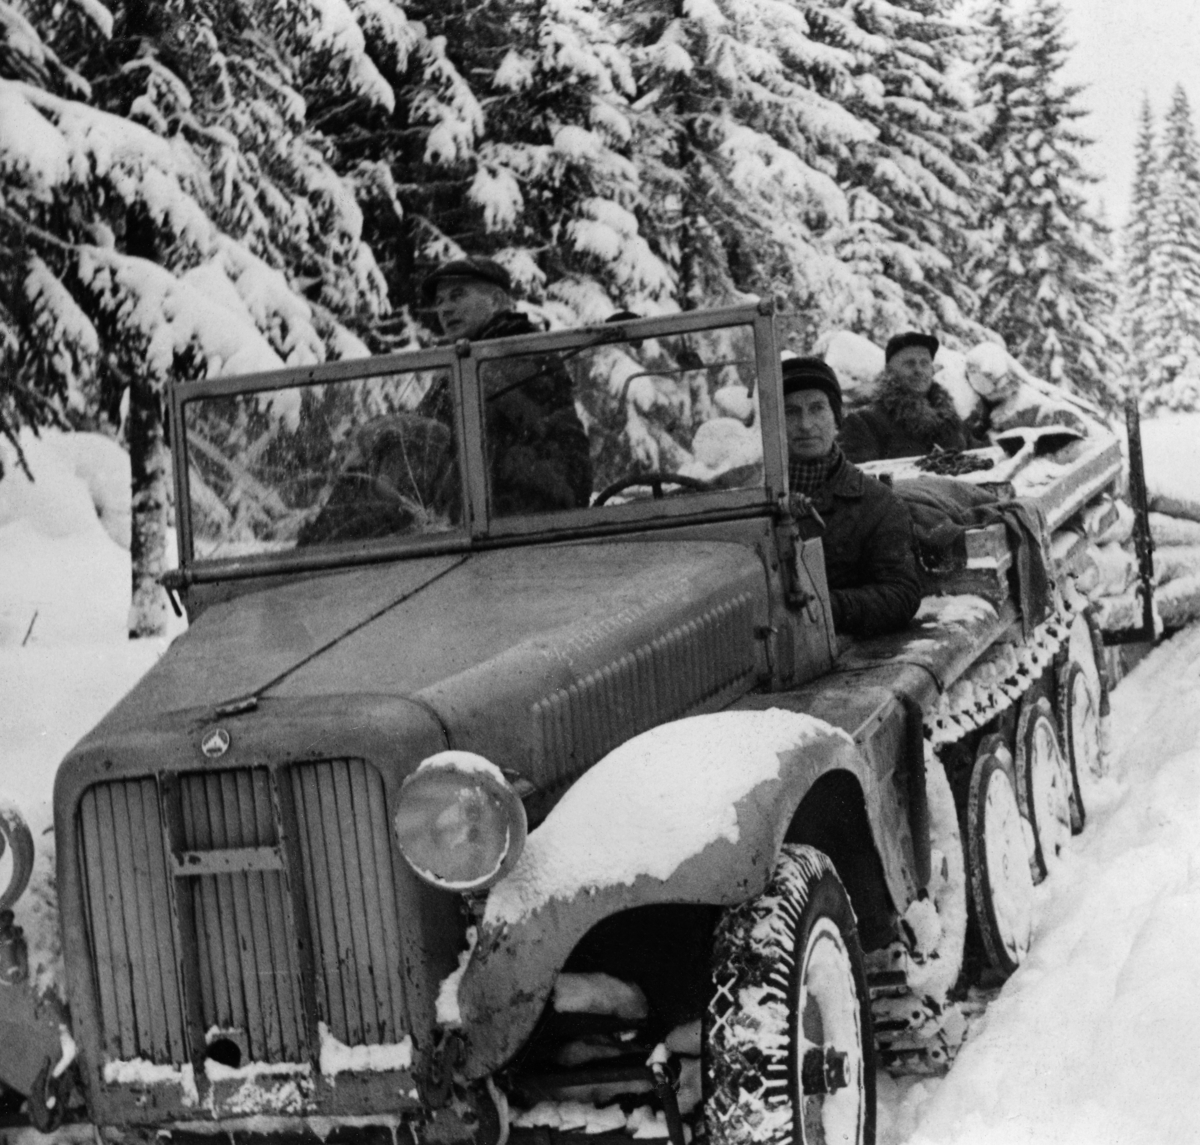 Beltebil som ble brukt i firmaet And. H. Kiær & Co. Ltds forsøk med bruk av motorkjøretøy til tømmertransport i første halvdel av 1950-åra.  Fotografiet er tatt mot fronten av kjøretøyet.  Den ser ut som en lastebil, med motorkasse, skjermer, lykter og gummihjul på forstillingen, som på en vanlig lastebil.  Bakparten av kjøretøyet gikk på belter.  Bilen hadde ikke overbygde førerplasser, men ei todelt frontrute.  Bak denne ser vi to karer.  Bakenfor skimtes den spesialbygde rustningen, en todelt tømmerslede med kraftige stålstaker på sidene.  På denne sleden sitter skogsbestyrer Ole P. Sandbæk.  Vi er usikre på identiteten til e to karene som sitter på kjøretøyet.  Jørgen Salberg og Semming Andreassen var imidlertid også med på forsøksdriftene med motorisert tømmertransport i Stor-Elvdal.  Fagbladet «Skogeieren» hadde i 1950 en reportasje der de fulgte ei tømmervending hvor det ble transportert 80 stokker med et slikt kjøretøy, som i motsetning til tilsvarende doninger for hest, hadde kraftige stålstaker på sidene og et eget ståldrag i fronten.  I tillegg til det tømmeret som befant seg på sleden, var det altså vanlig at kjørerne la «etterslått», en serie av tømmerfloer som ble slept på den snøpakkete vegen bak beltekjøretøyet og rustningen.  Det lasset fagbladet «Skogeieren» fulgte besto til sammen av 145 stokker og hadde et volum på 18,7 kubikkmeter.  Denne transportmåten skal ikke ha vært like hemmet av snøfall eller mildvær med klabbeføre som sledekjøring med hest.  Forstmannen Hans Berger, som var skogsbestyrer hos And. H. Kiær & Co. Ltd. og hadde ansvaret for en del av beltebildriftene, rapporterte om at de både gjorde det mulig å hente tømmer fra steder som var langt på veg utilgjengelige med hest, og at driftskostnadene per kubikkmeter ble noe lavere med motorisert transport (jfr. notat som er gjengitt under fanen «Opplysninger»).

Gunnar Garen har i en kommentar til presentasjonen av dette motivet på nettstedet «DigitaltMuseum» (2. mai 2015) skrevet følgende:

«Dette er en kanontrekkvogn fra ca. 1940, trolig en 3 tonner fra Sveitsiske Saurer, men mange lagde disse.  Kunne trekke en kanon på 3 tonn.  Største kunne trekke 12 tonns kanon.»

Seinere har vi mottatt følgende spesifikasjon:

"Sveitsisk Saurer halvbelter, Sd.Kfz. 10 - Sonder-Kraftfahzeuge 10 (løpenummer) fra 2. verdenskrig, produsert av ulike fabrikker for tyske Wehrmacht. Også kalt Zugkraftwagen 1 t - lettere trekkvogn for 1-tonns trekkraft i terreng."

Høsten 2020 kom følgene kommentar fra Asbjørm Rolseth:

«Ikke bland Sveits inn i dette. Sveits var et nøytralt land under 2. verdenskrig og produserte aldri krigsmateriell for tyske Wehrmacht. Moderfirmaet Saurer i Sveits var medeier i Österreichische Saurer-Werke AG, etablert i 1914, men solgte seg ut i 1937. Saurer i Østerrike fortsatte som eget firma og ble involvert i tysk krigsproduksjon etter at Østerrike ble tilsluttet Tyskland i 1938. Saurer i Østerrike var en av seks produsenter av denne typen halvbeltebil. Bilen på bildet kan like godt være produsert av en av de andre.»

Mer informasjon om And. H. Kiær & Co's bruk av beltebilen finnes, som nevnt, under fanen «Opplysninger».